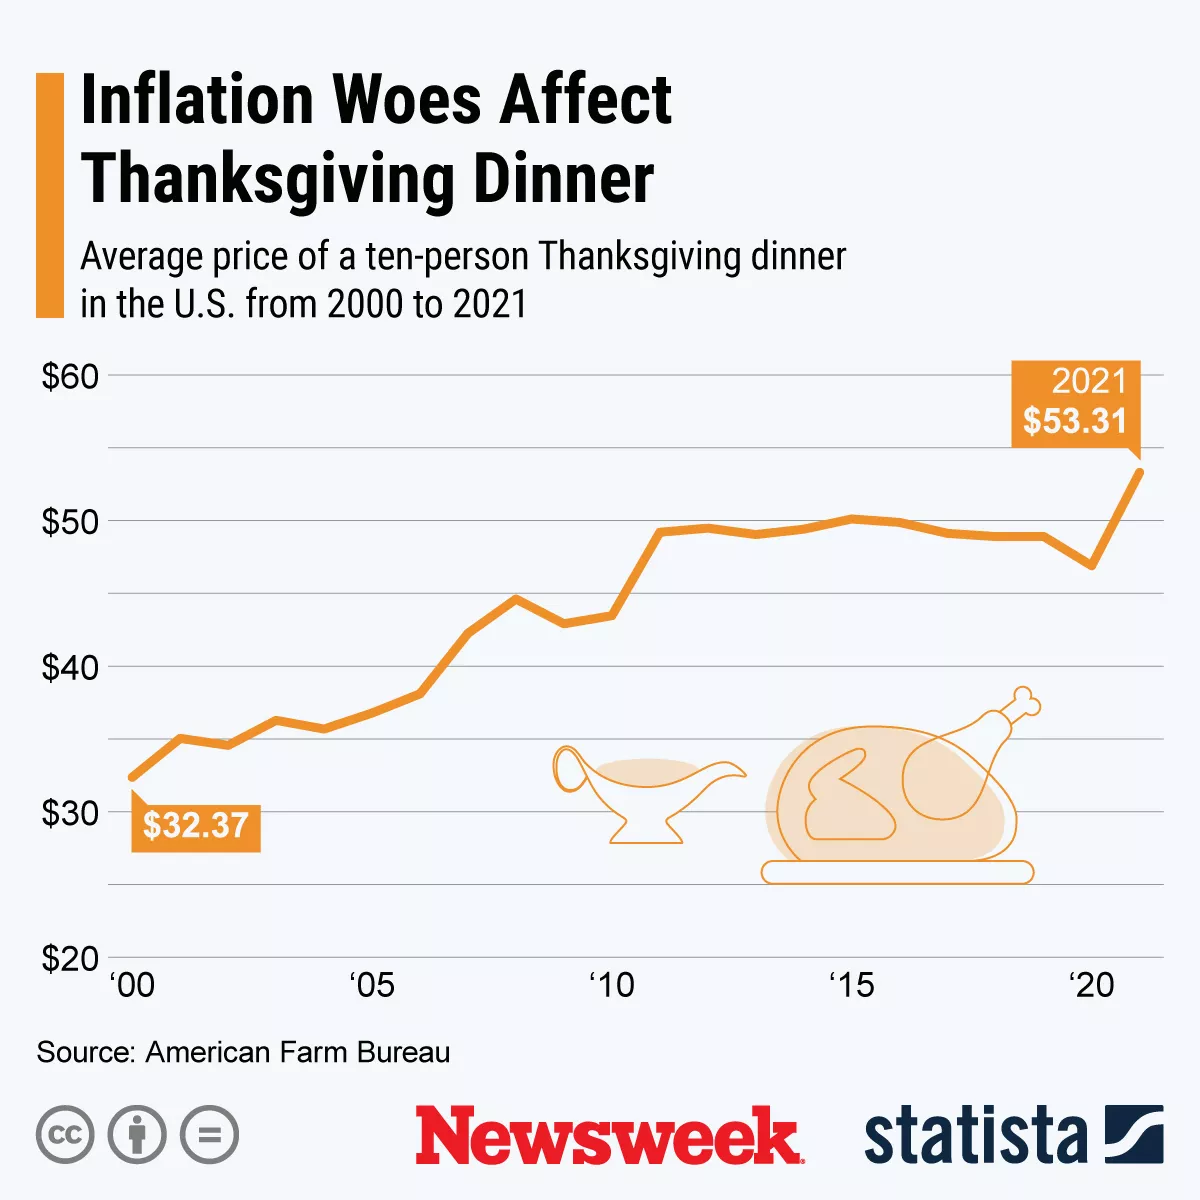 grafiek met inflatie-effect op Thanksgiving.